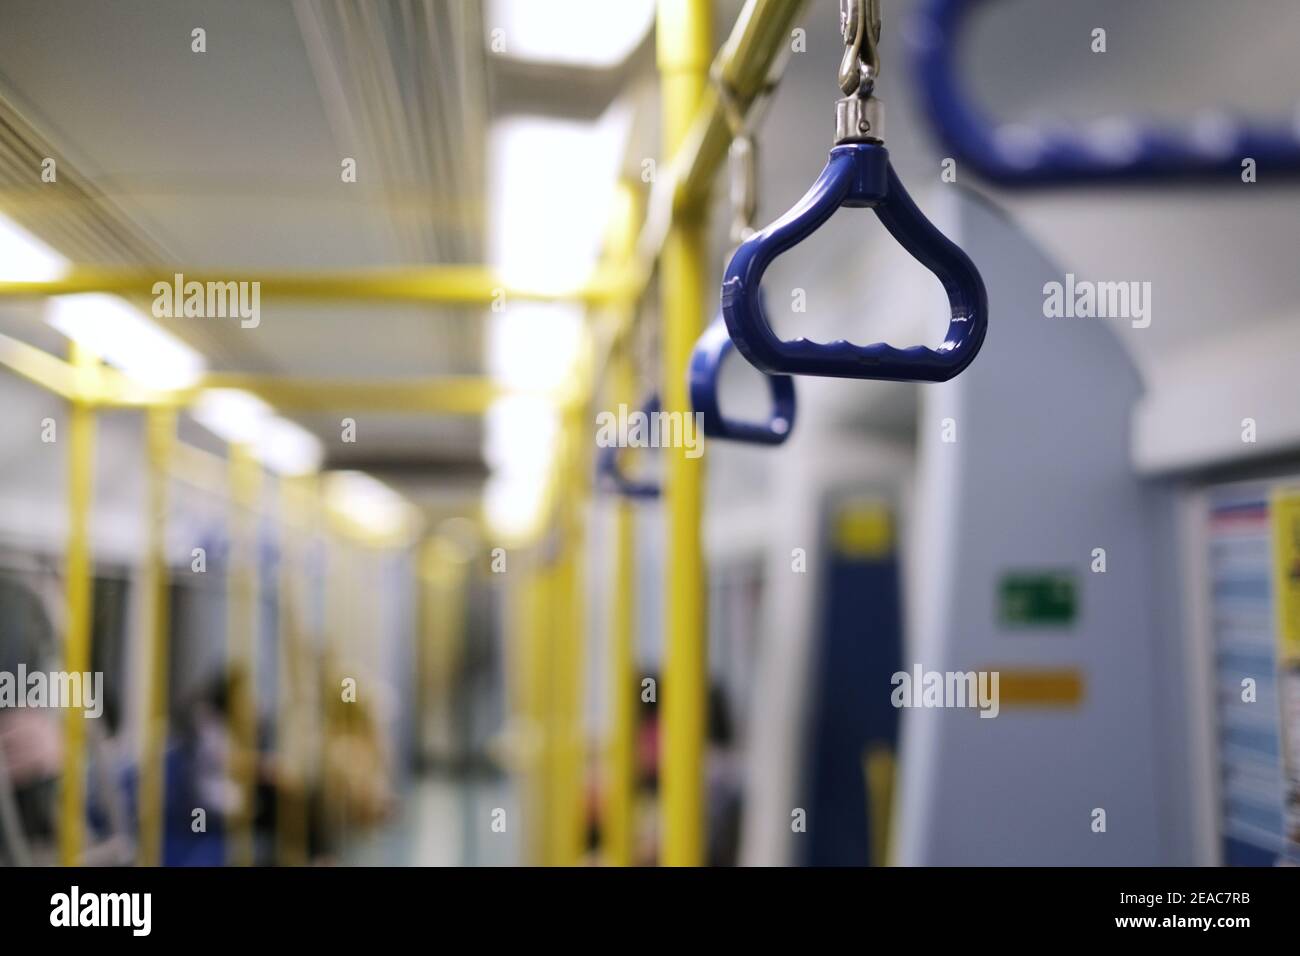 Des rangées de mains courantes bleues et de barres métalliques jaune vif sur un train aérien à grande vitesse pour la stabilité et la sécurité des passagers. Banque D'Images